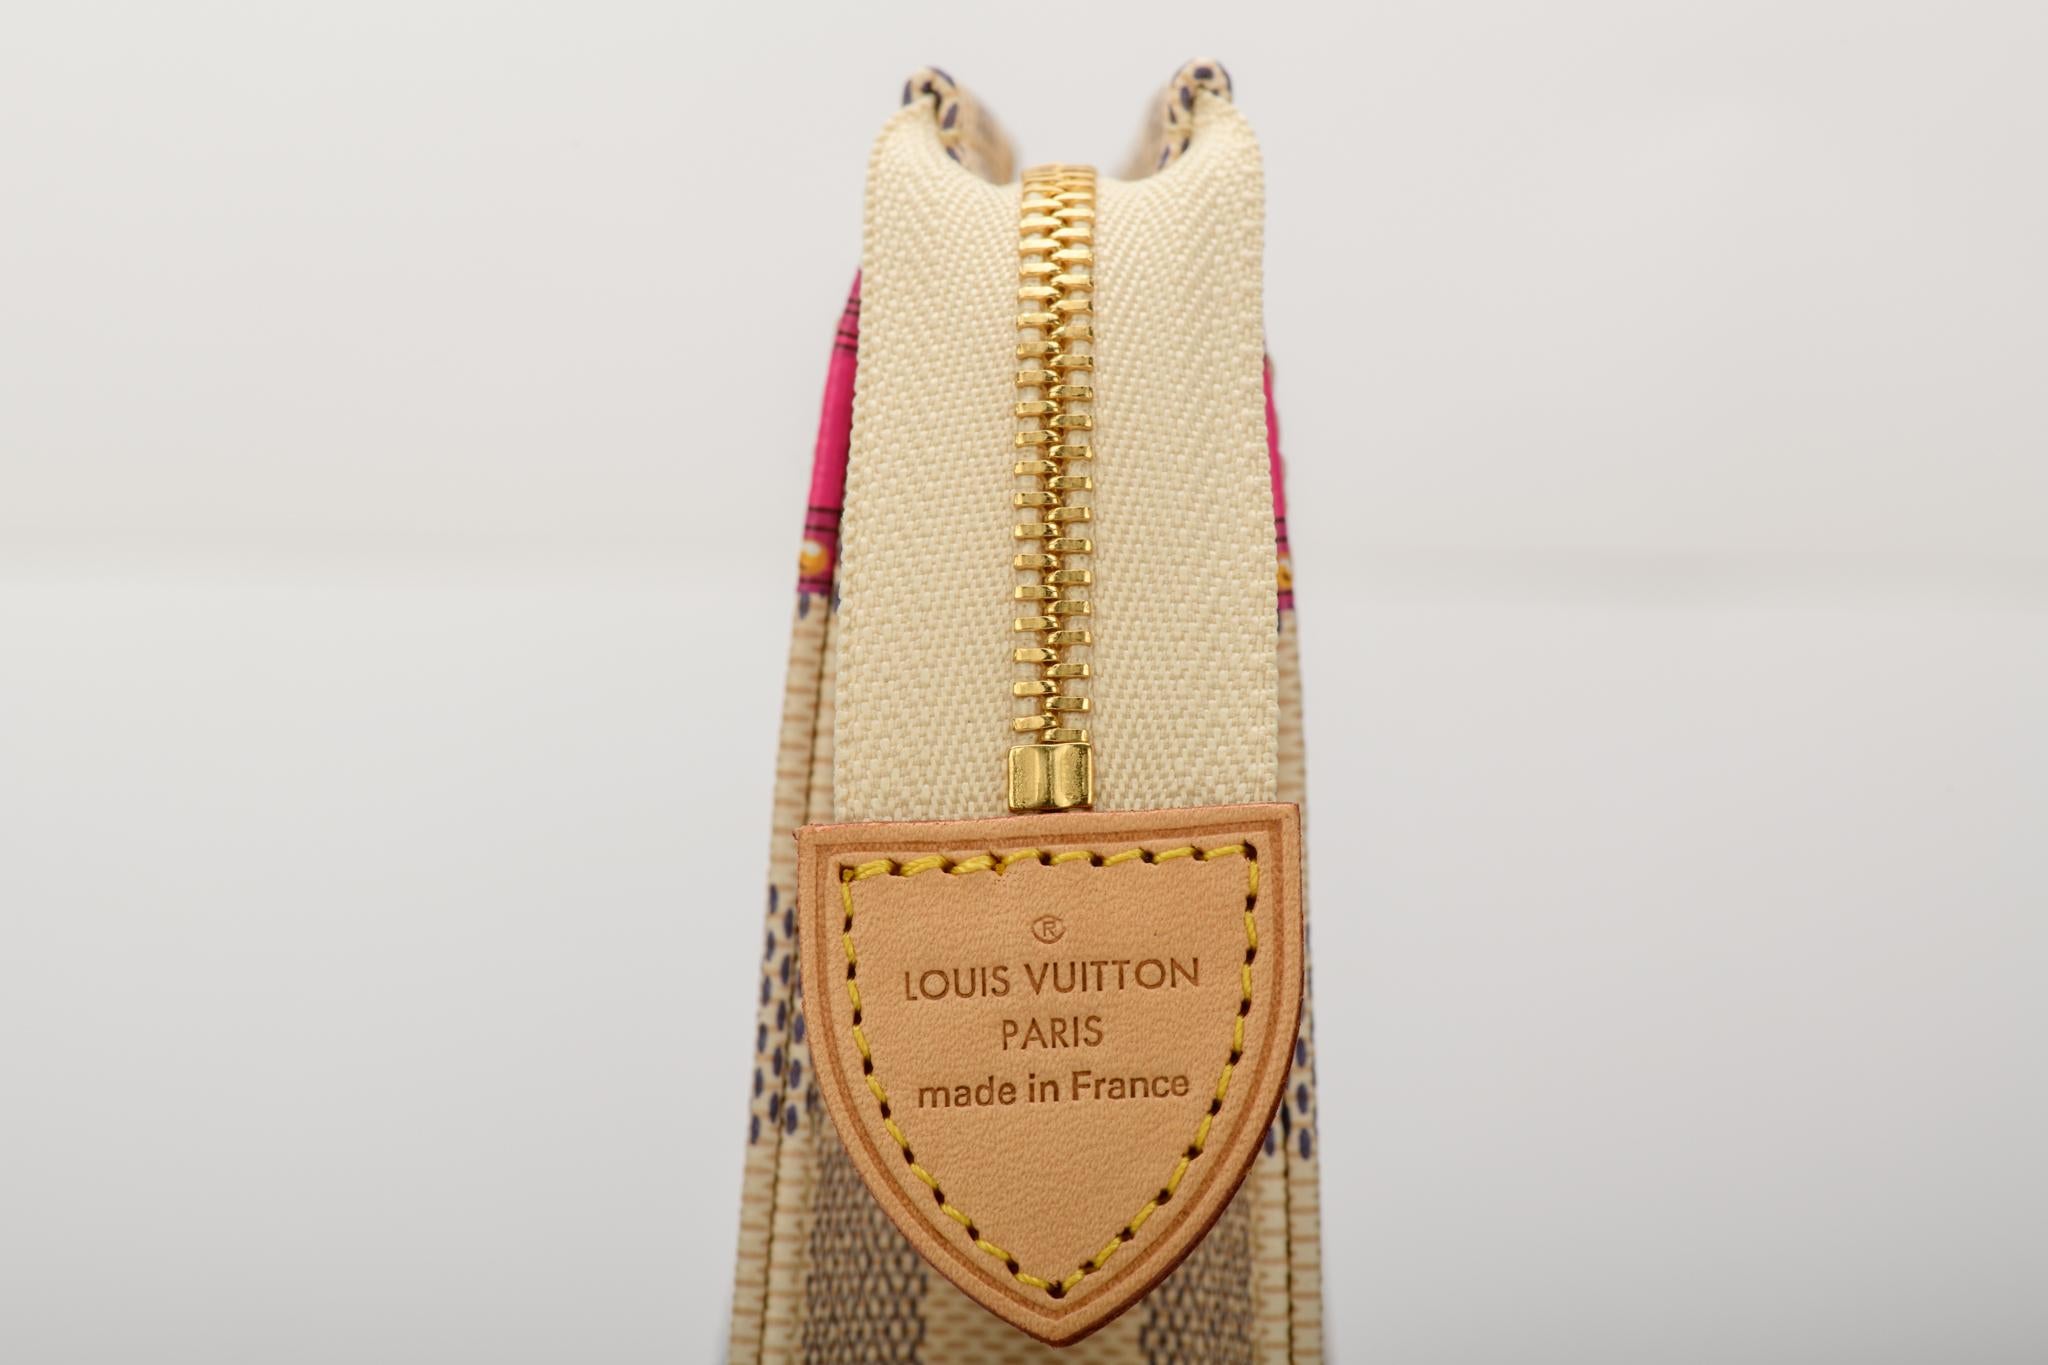 New in Box Louis Vuitton Limited Edition Damier St Tropez Trousse Bag 1